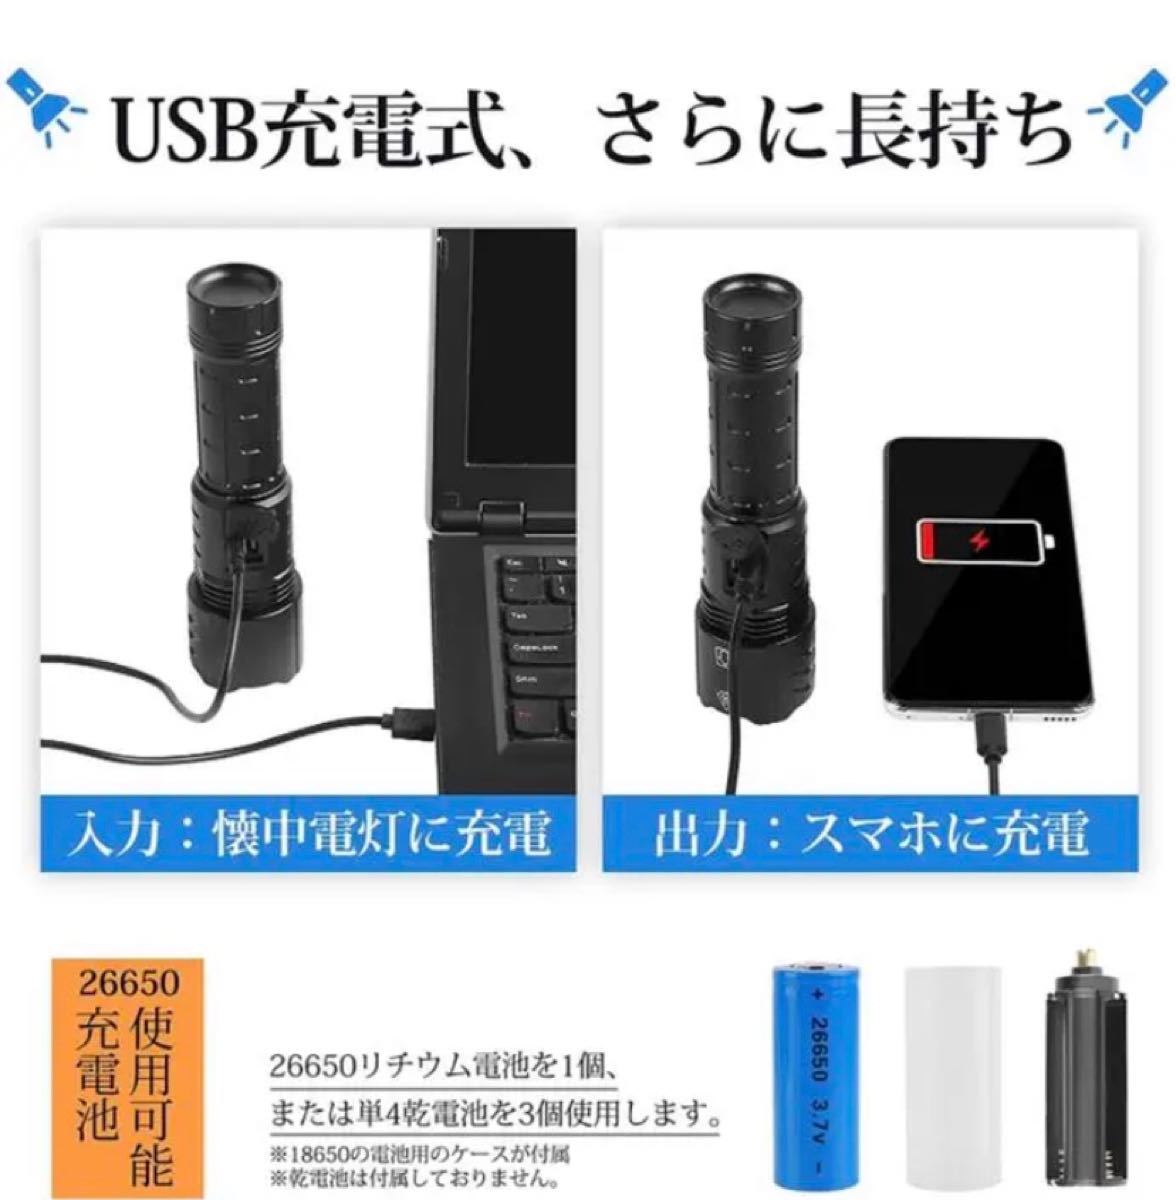 懐中電灯 LED 強力 高輝度 軍用 ハンディライト 充電式懐中電灯 USB充電 最新版 LEDハンディライト